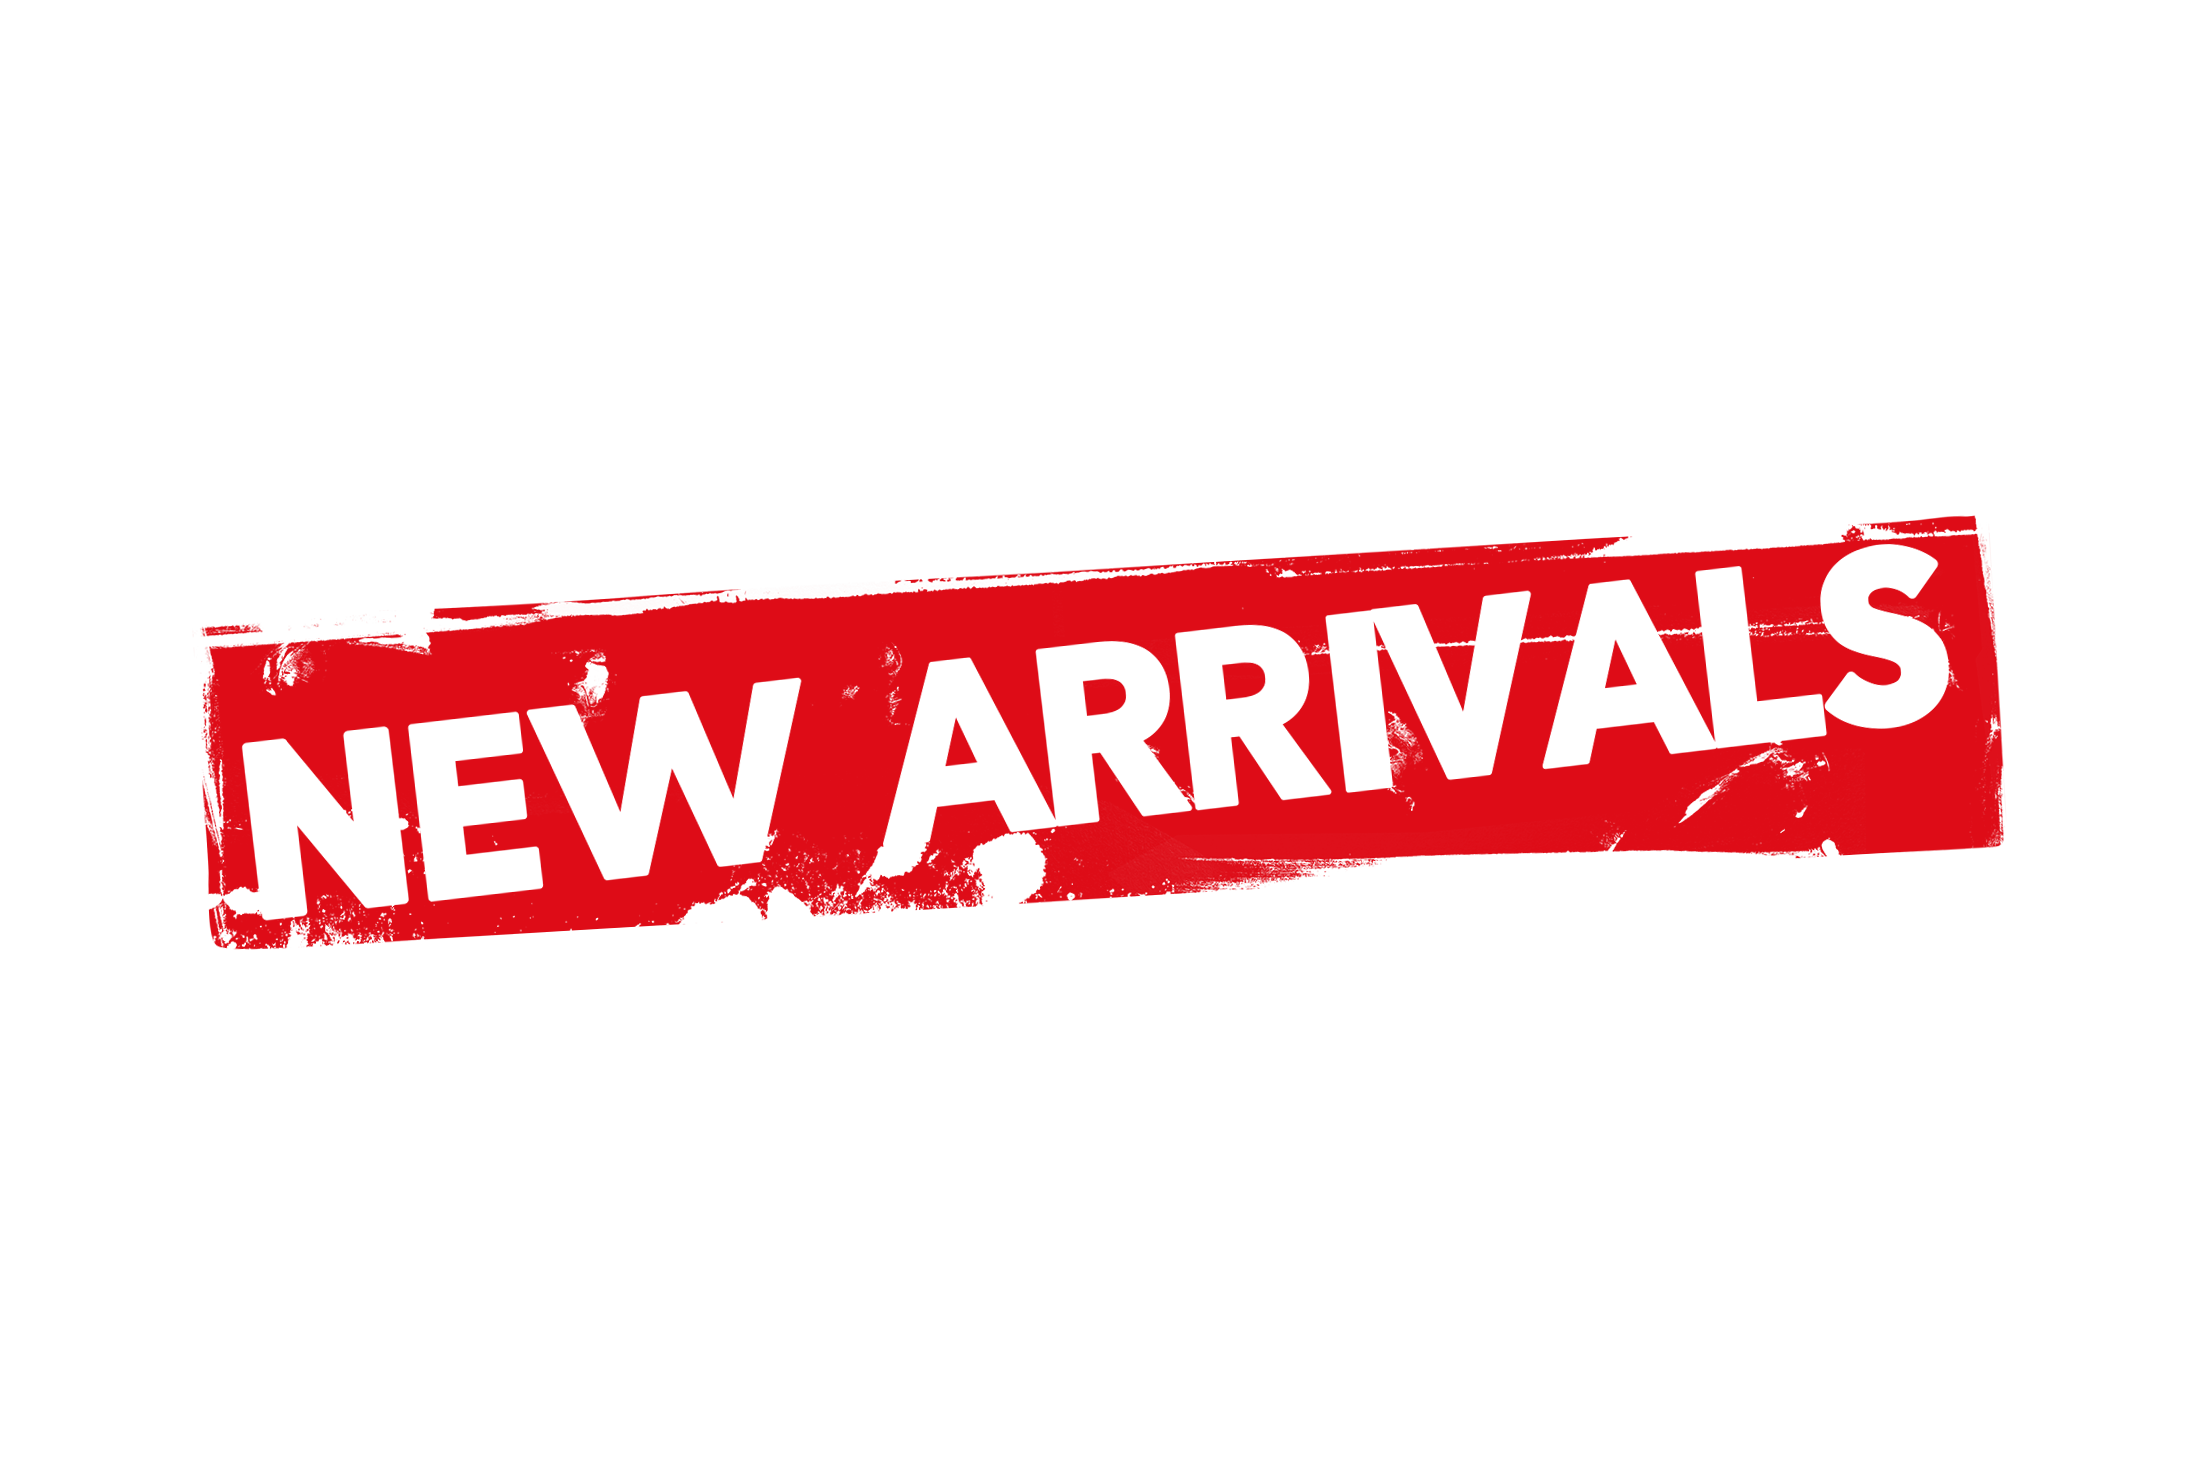 Grunge New Arrivals Label Psd Psdstamps